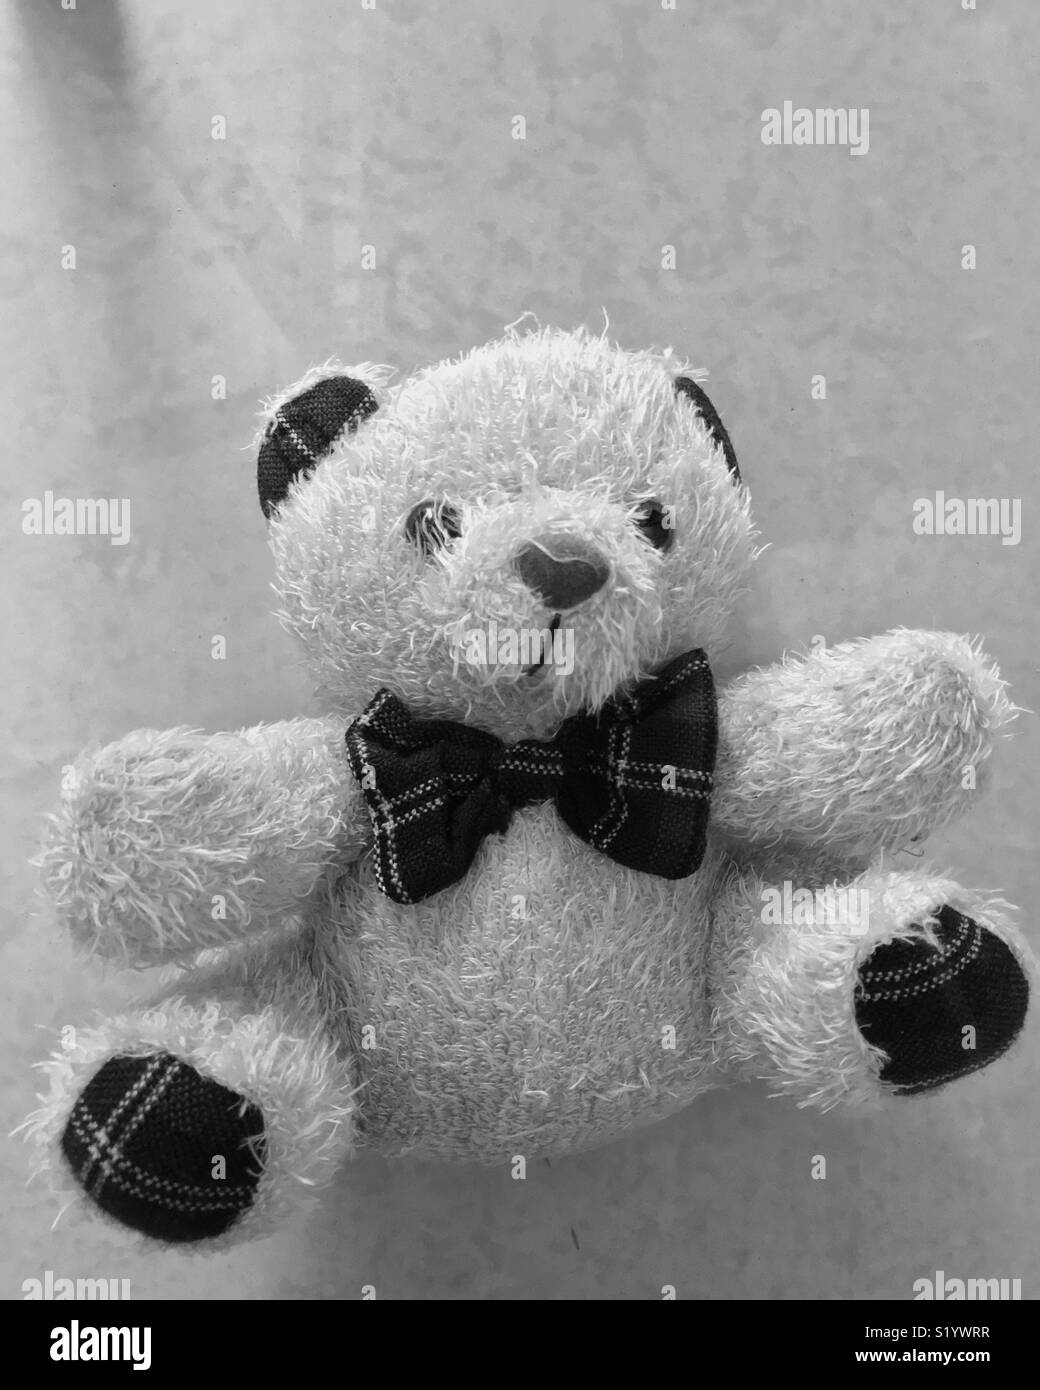 Cute teddy bear Stock Photo - Alamy